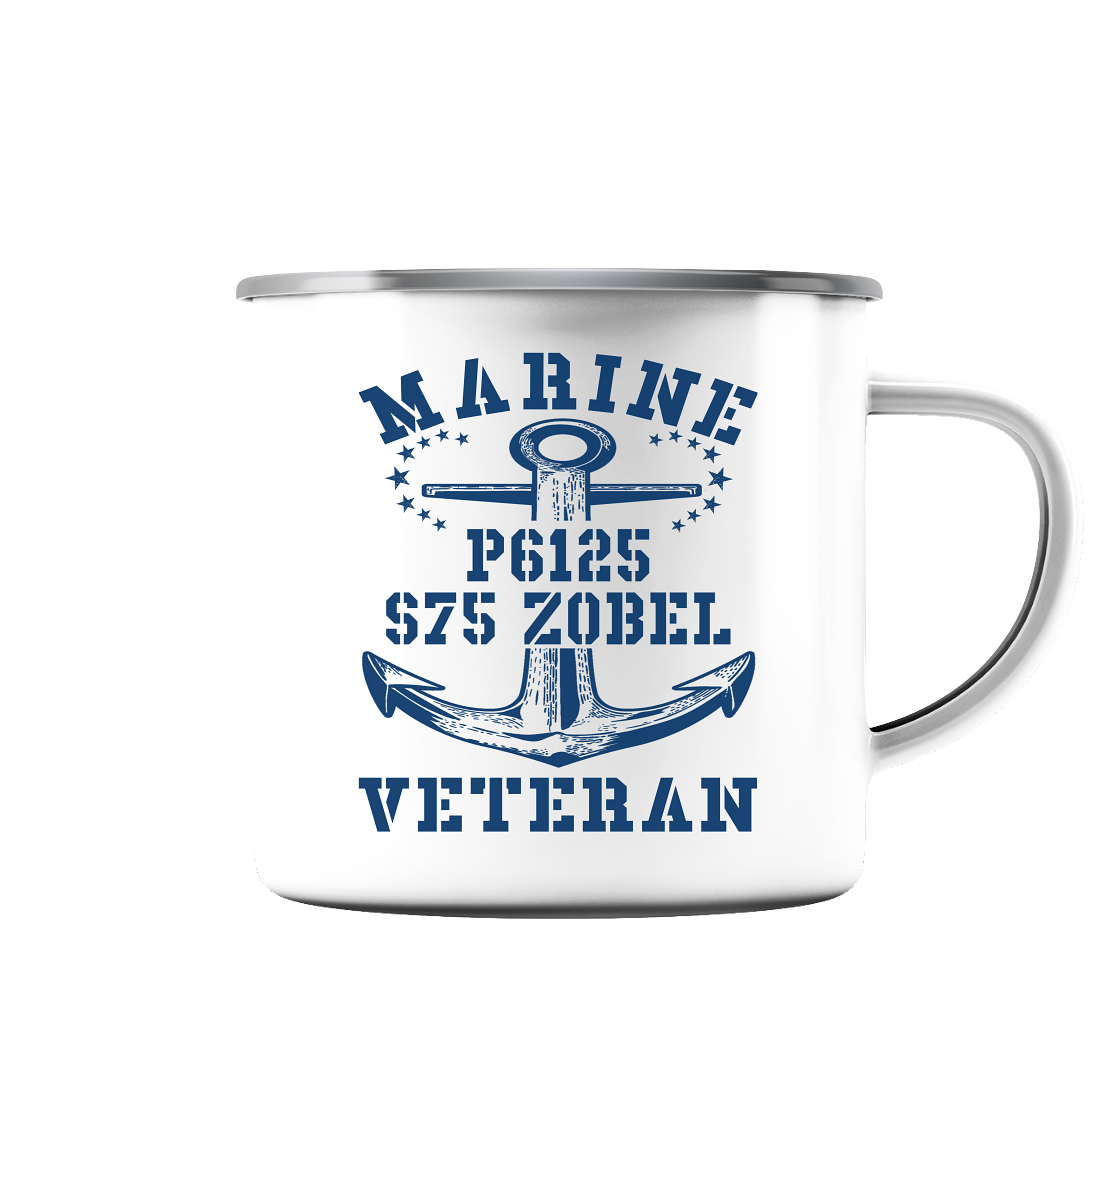 FK-Schnellboot P6125 ZOBEL Marine Veteran - Emaille Tasse (Silber)